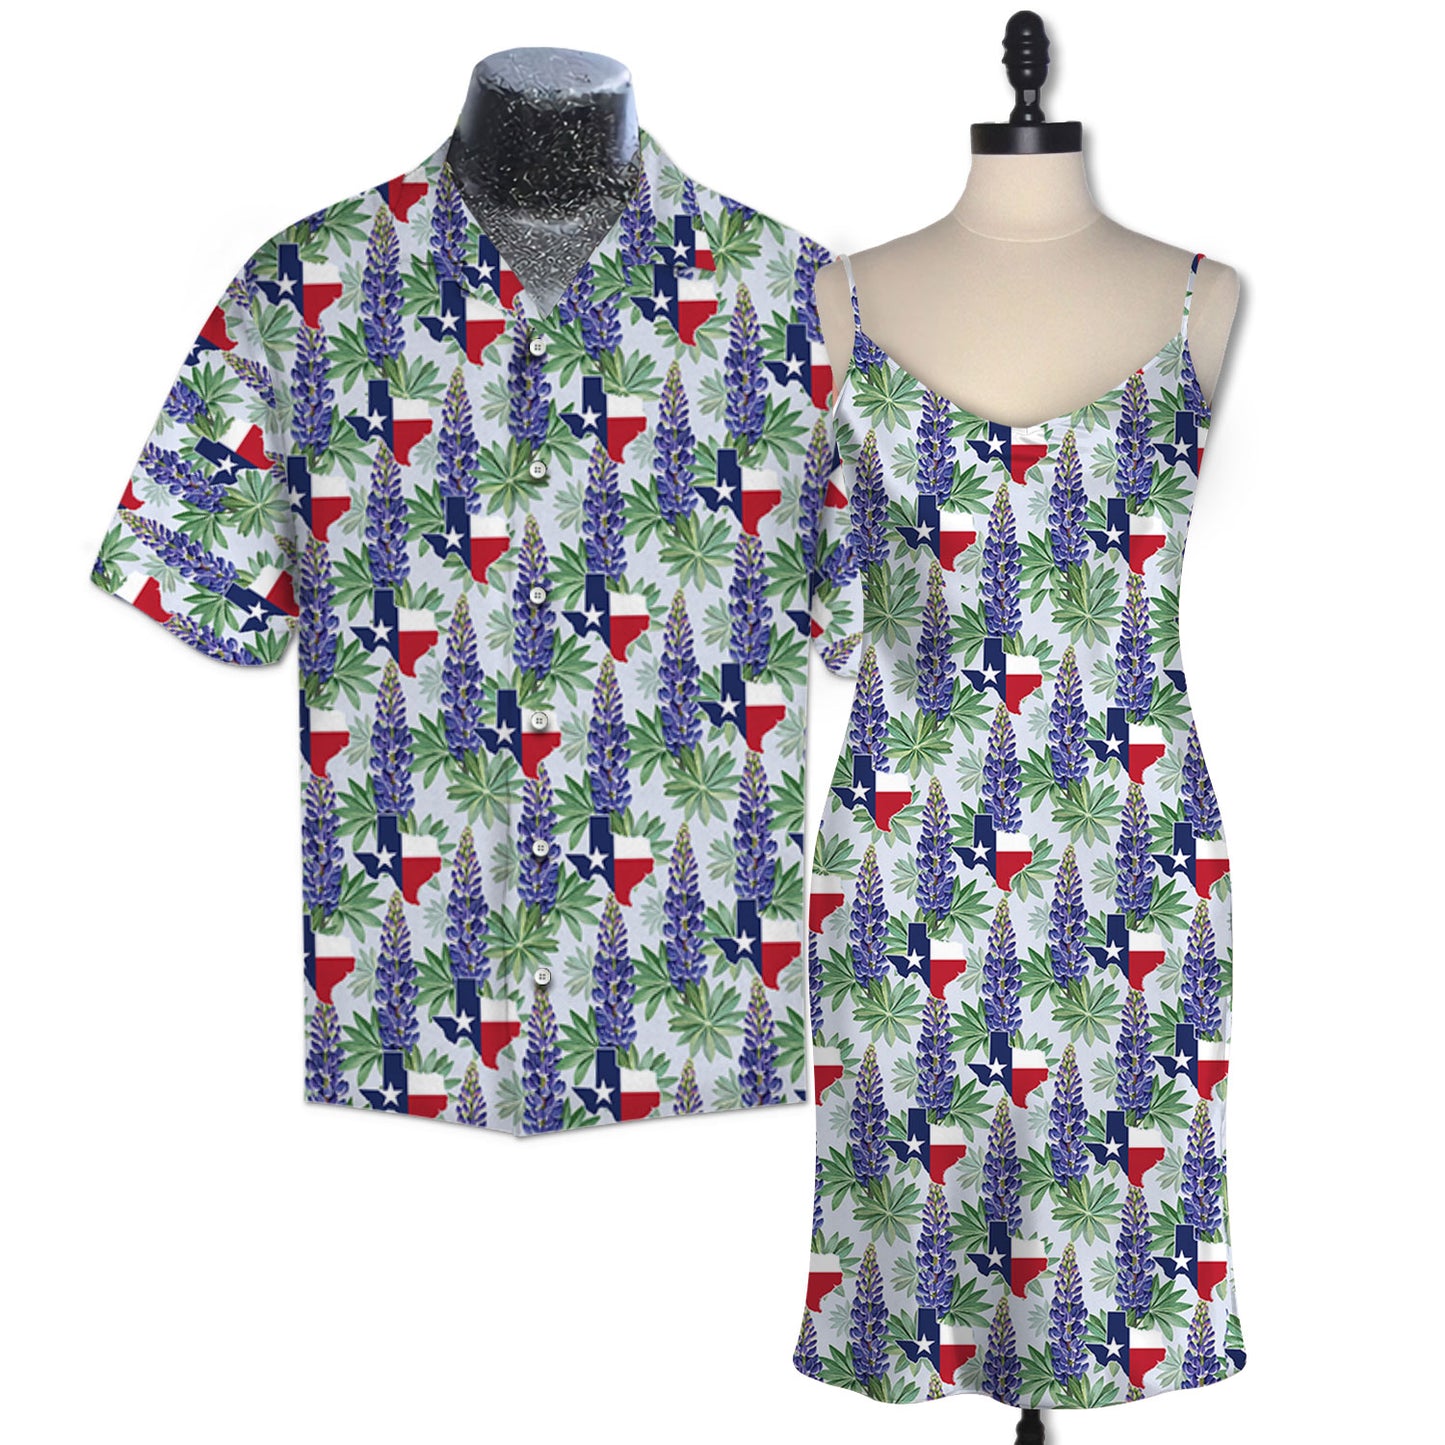 Bluebonnet Texas Matching Hawaiian Outfit